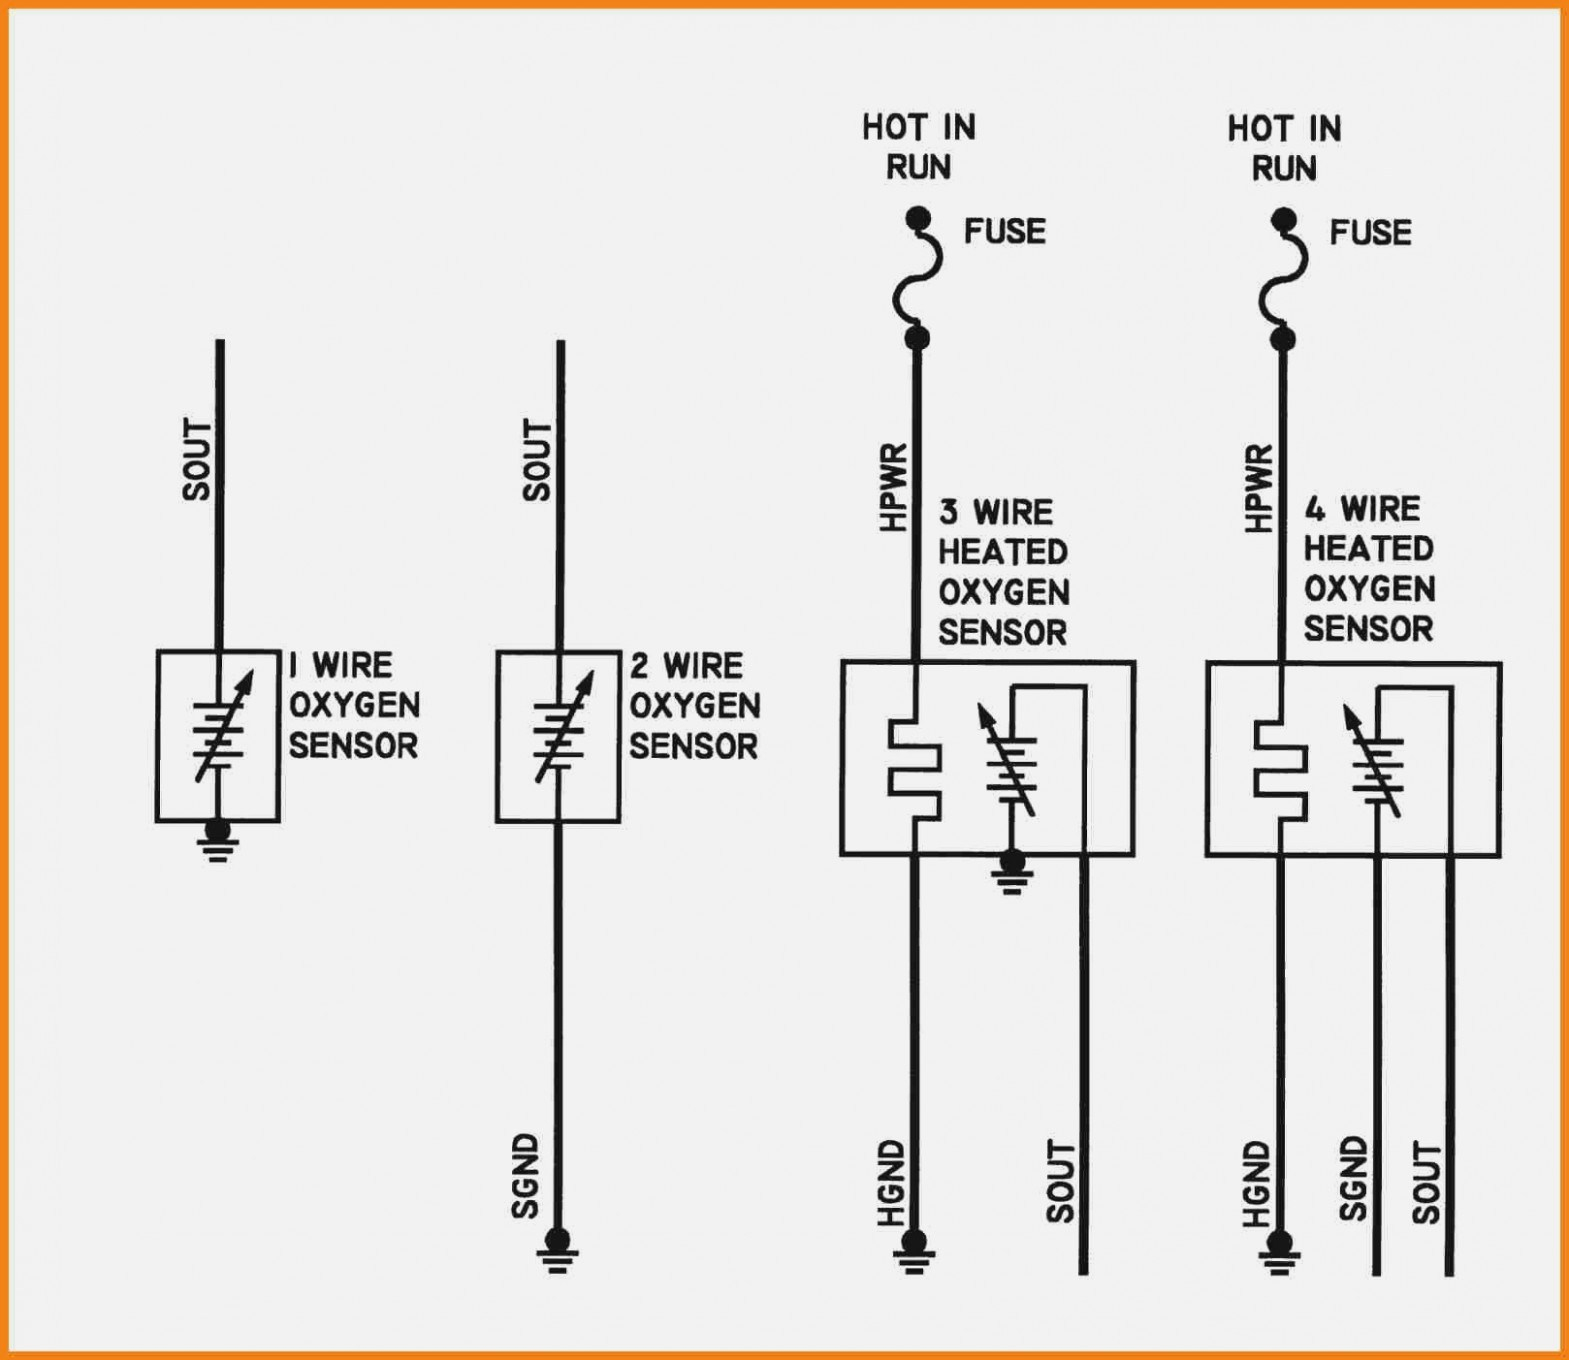 Gm Speed Sensor Wiring | Wiring Diagram - 2 Wire Speed Sensor Wiring Diagram